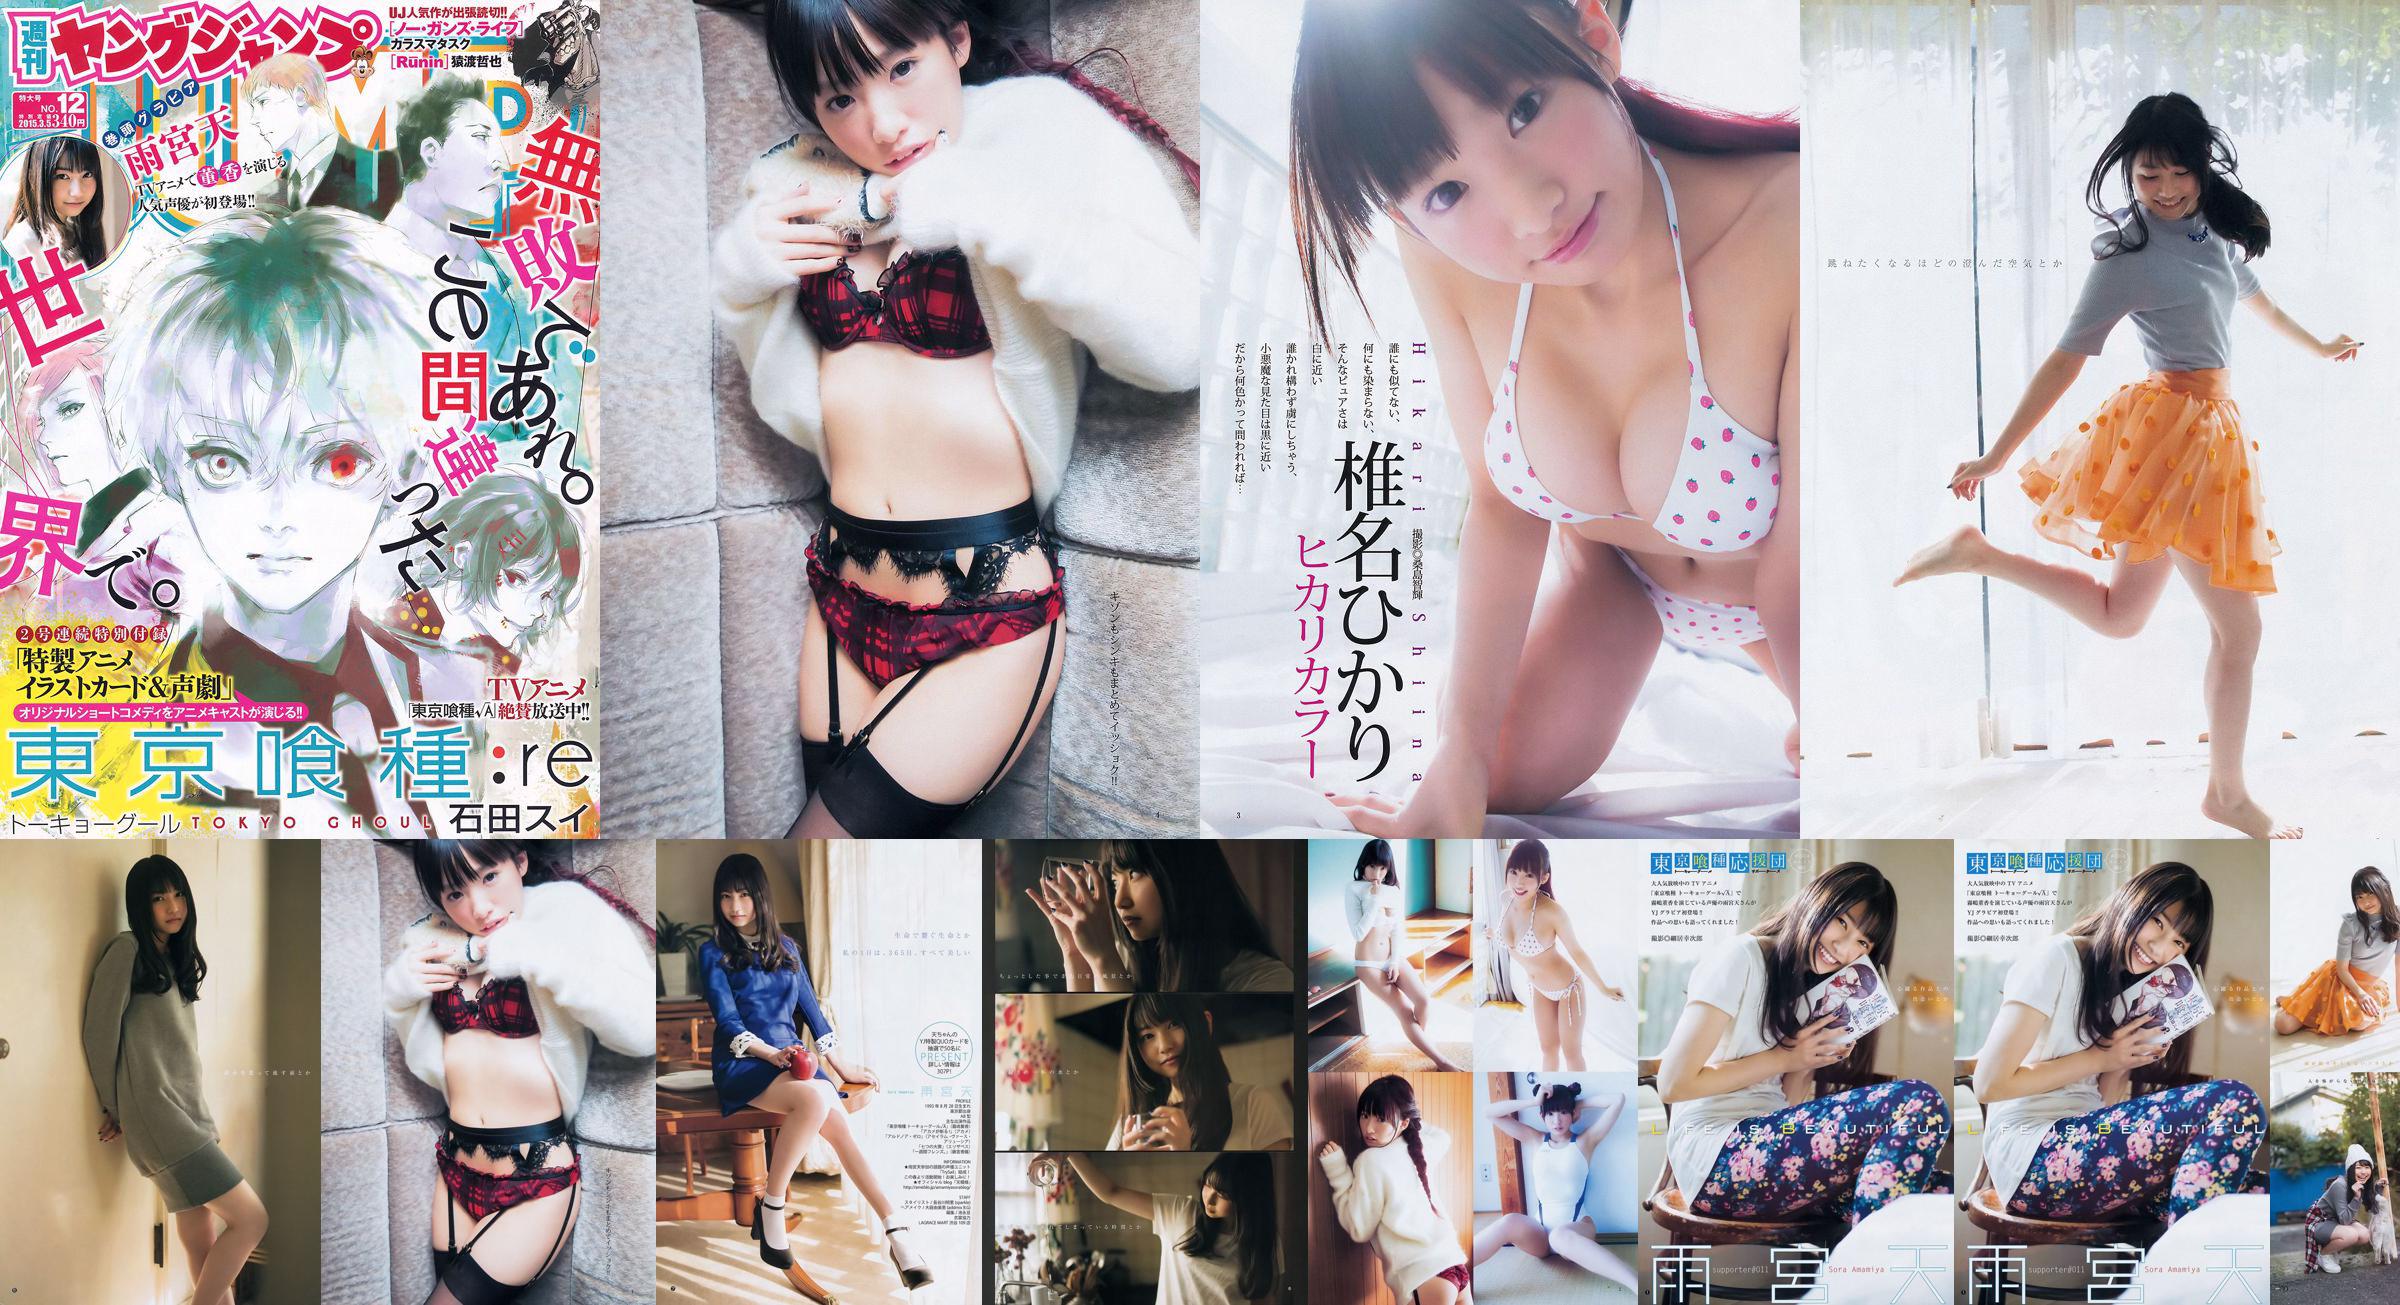 Amamiya Tian Shiina ひかり [Weekly Young Jump] 2015 No.12 Photo Magazine No.445a61 Página 1